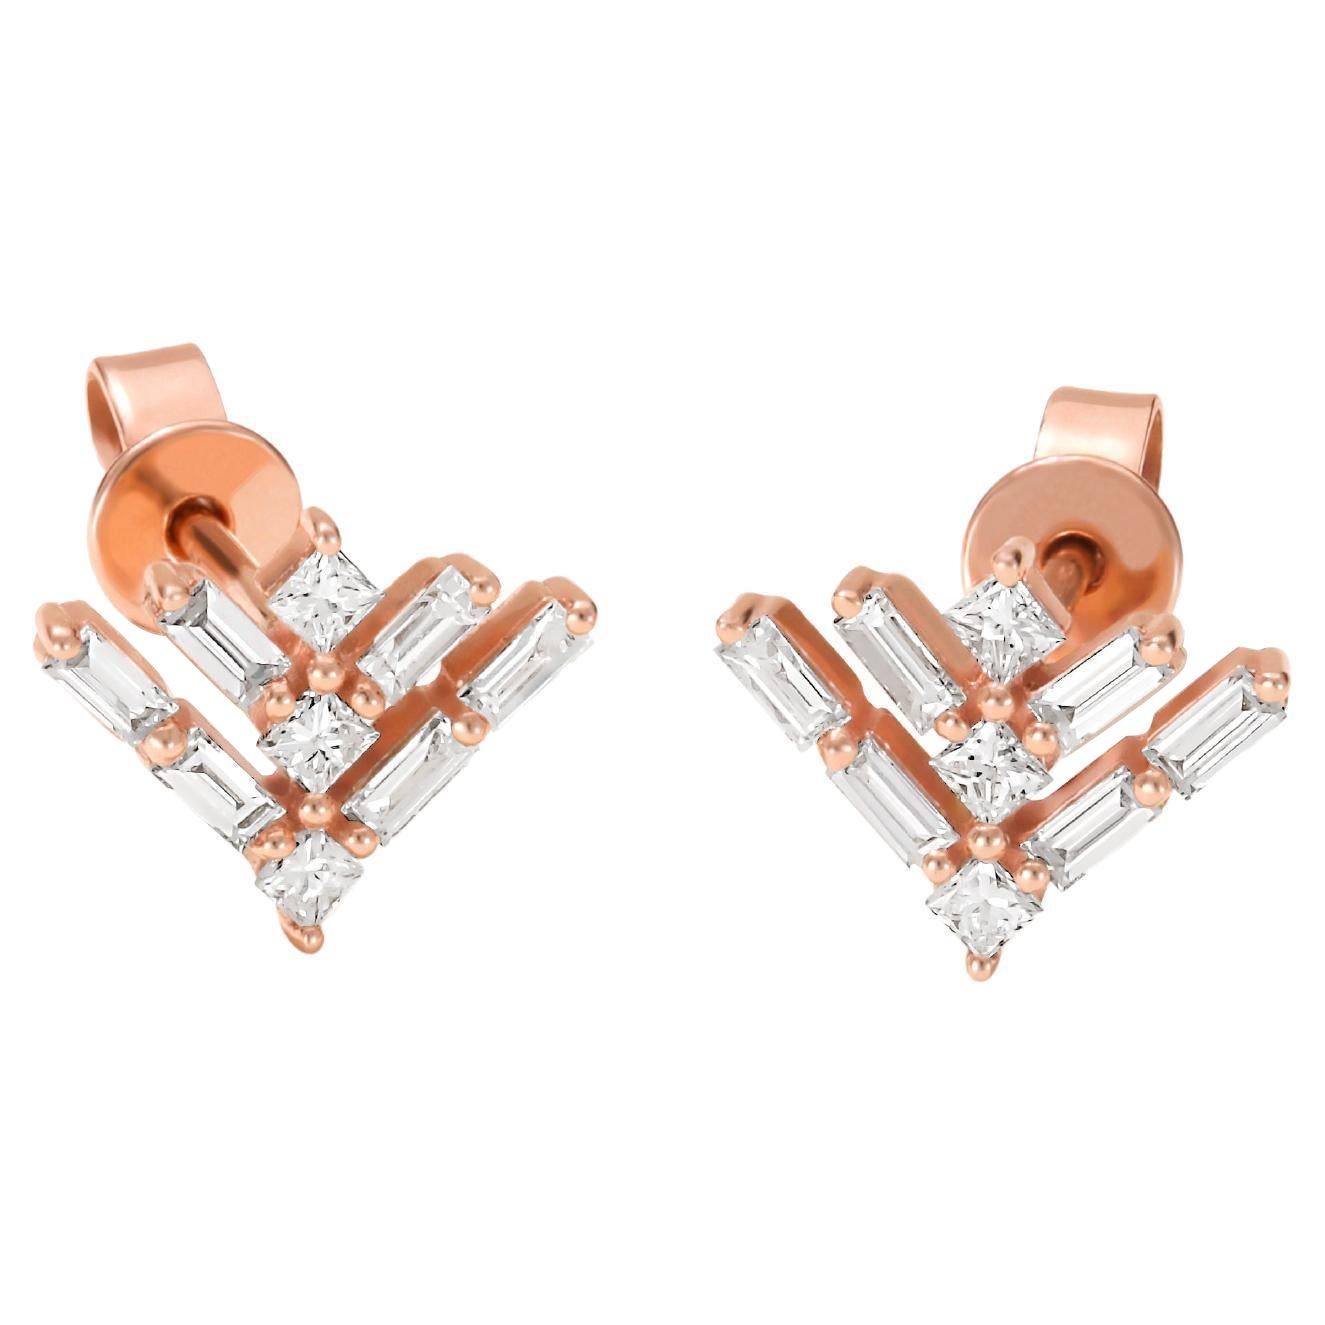 Luxle 0.39 Carat T.W Princess-Cut Diamond Stud Earrings in 14k Rose Gold